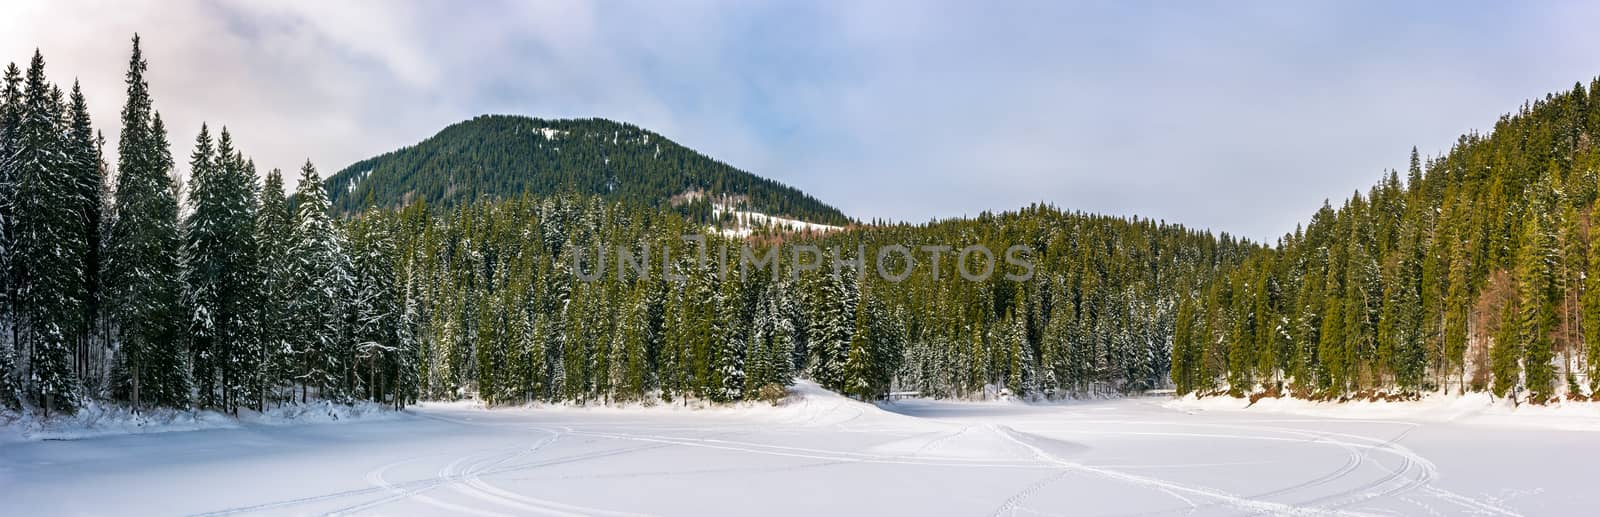 snowy meadow in winter spruce forest by Pellinni